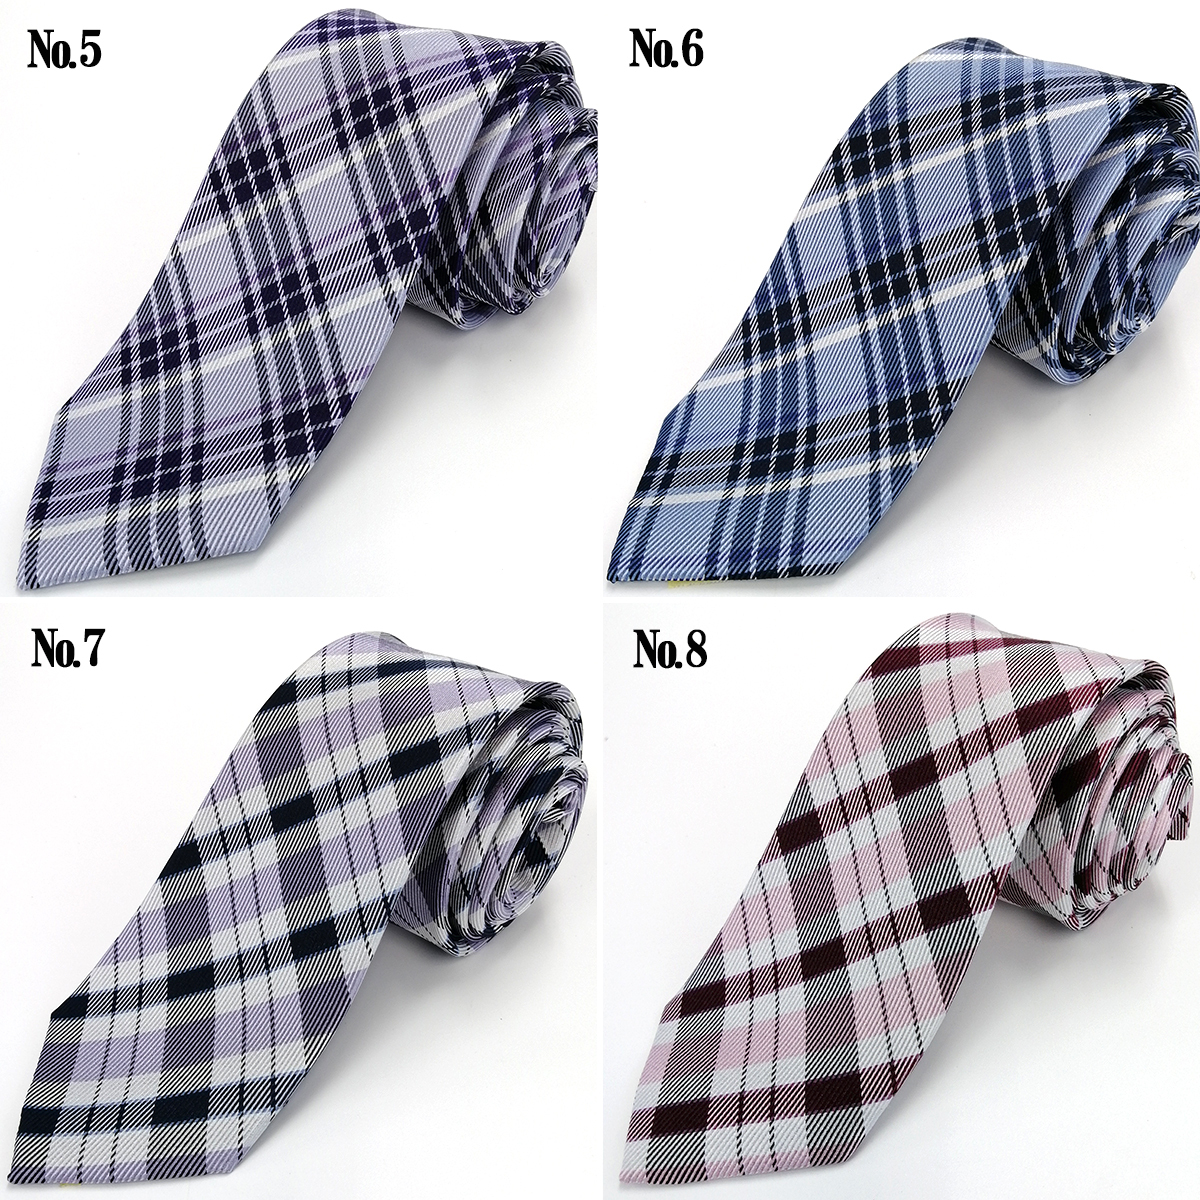  галстук можно выбрать шелк модный полоса маленький рисунок точка одноцветный проверка почтовая доставка бесплатная доставка 